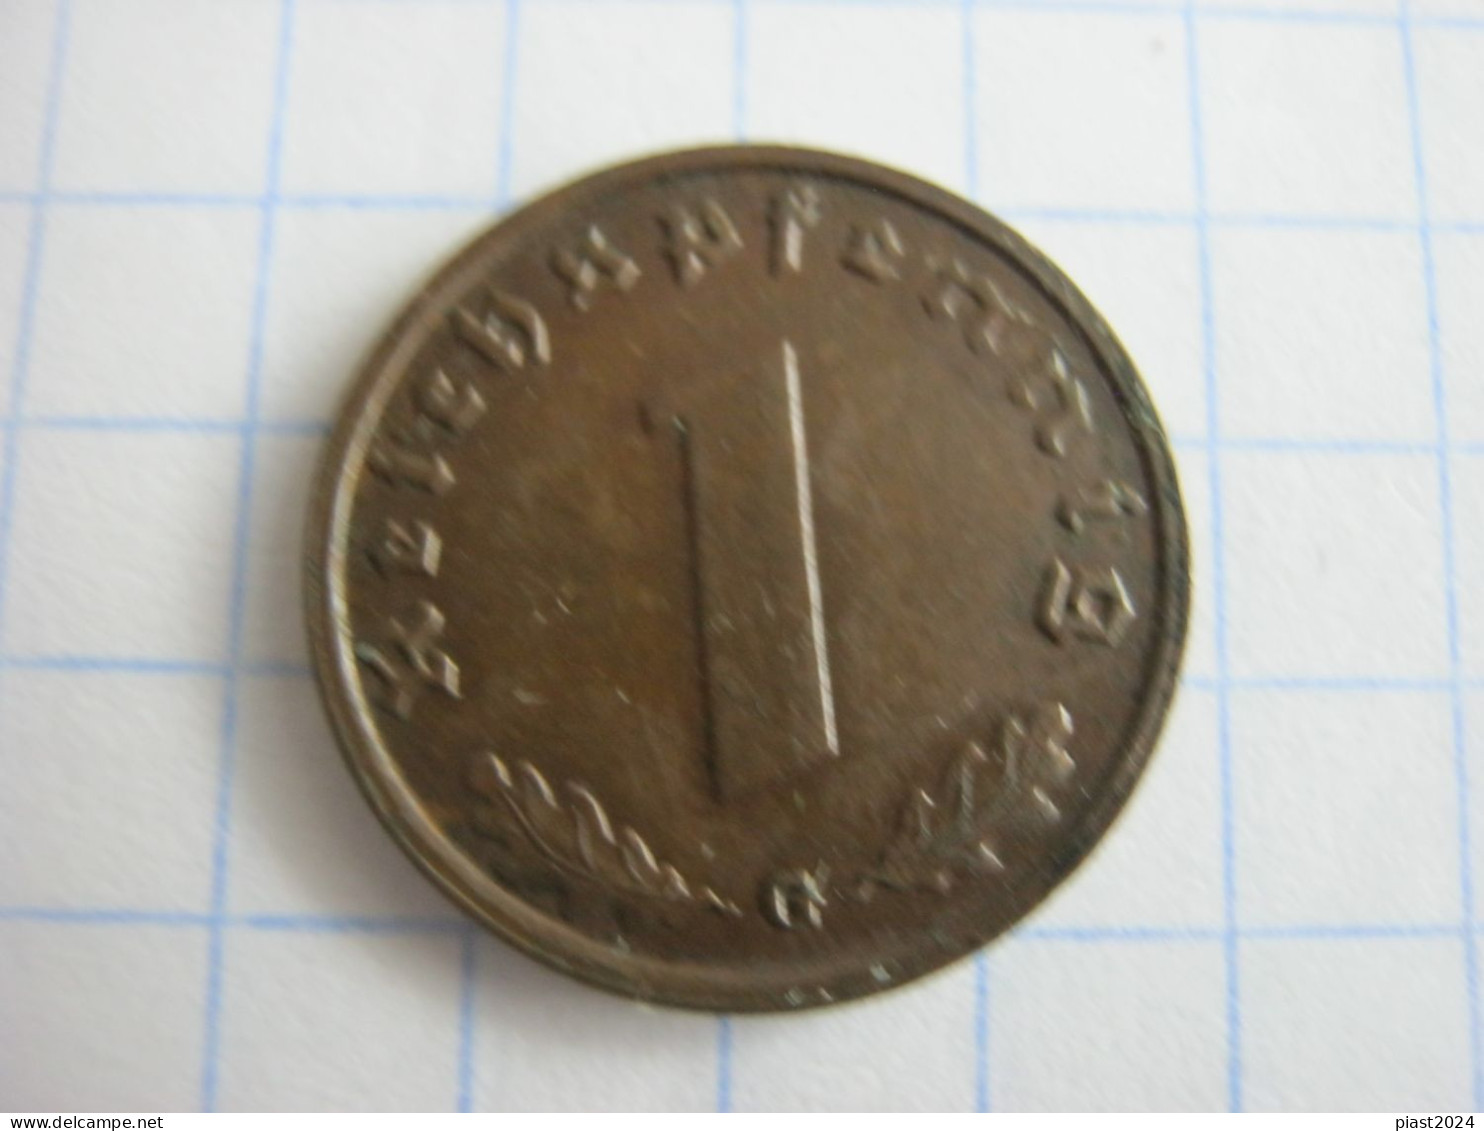 Germany 1 Reichspfennig 1938 G - 1 Reichspfennig